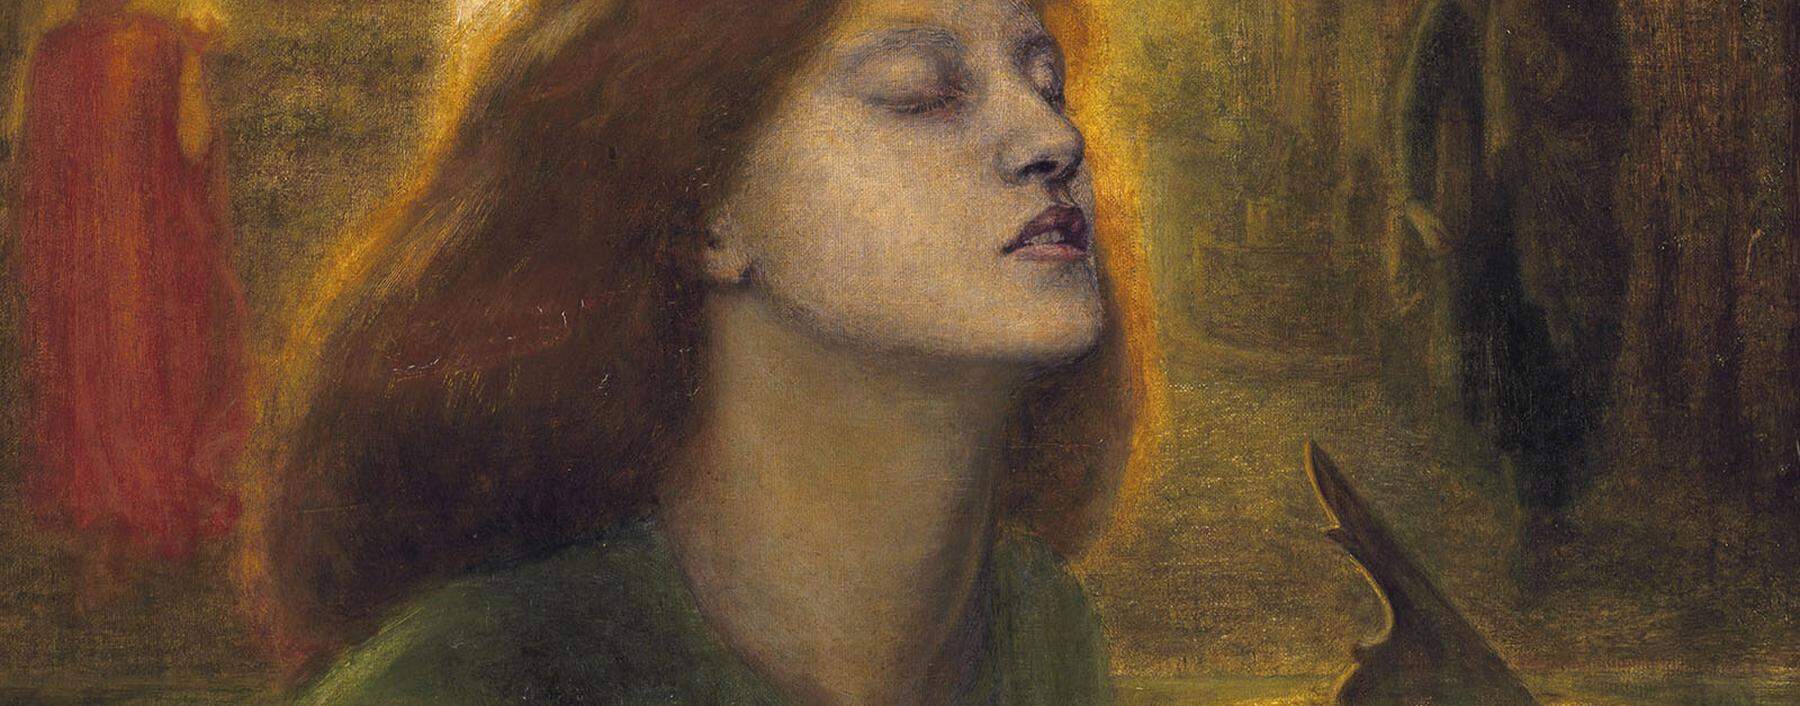 Mager, vergeistigt und doch voller Leidenschaft – der tuberkulöse Look galt im 19. Jh. als interessant, ja sexy. Elizabeth Siddal verkörperte ihn, sie wurde berühmt als Künstlerin und Model – hier für Dante Gabriel Rossettis Gemälde „Beata Beatrix“ (1864–1870) (Ausschnitt).